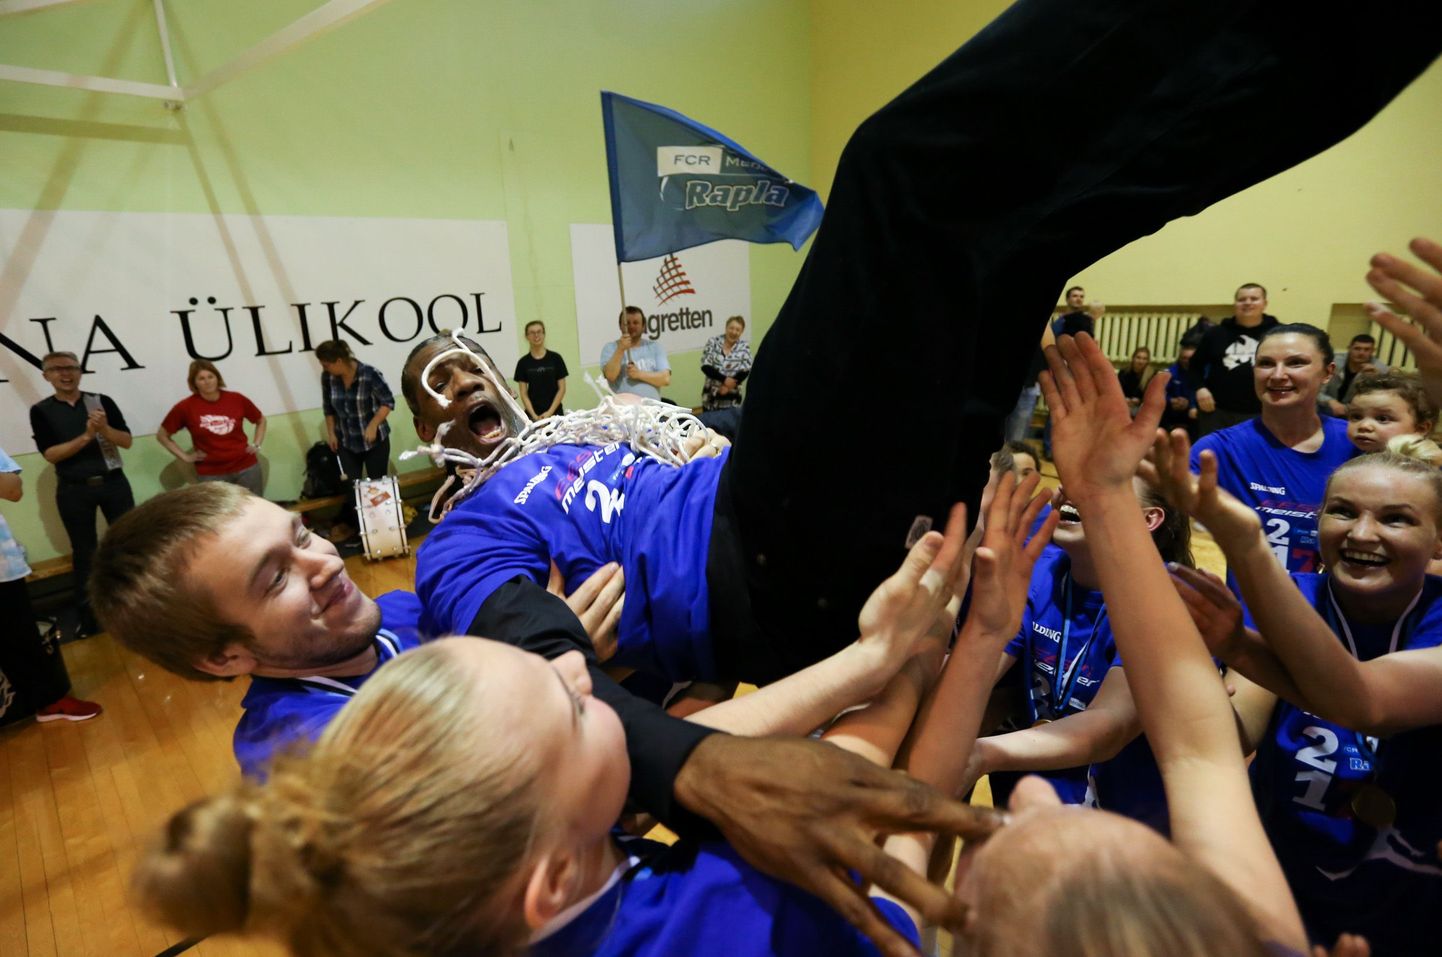 Eesti naiste korvpalli meistriks krooniti Rapla FCR/Media naiskond, kes alistas finaalseerias mängudega 3:1 Tallinna Ülikooli. Pildil Rapla võistkonna peatreener Howard Frier.